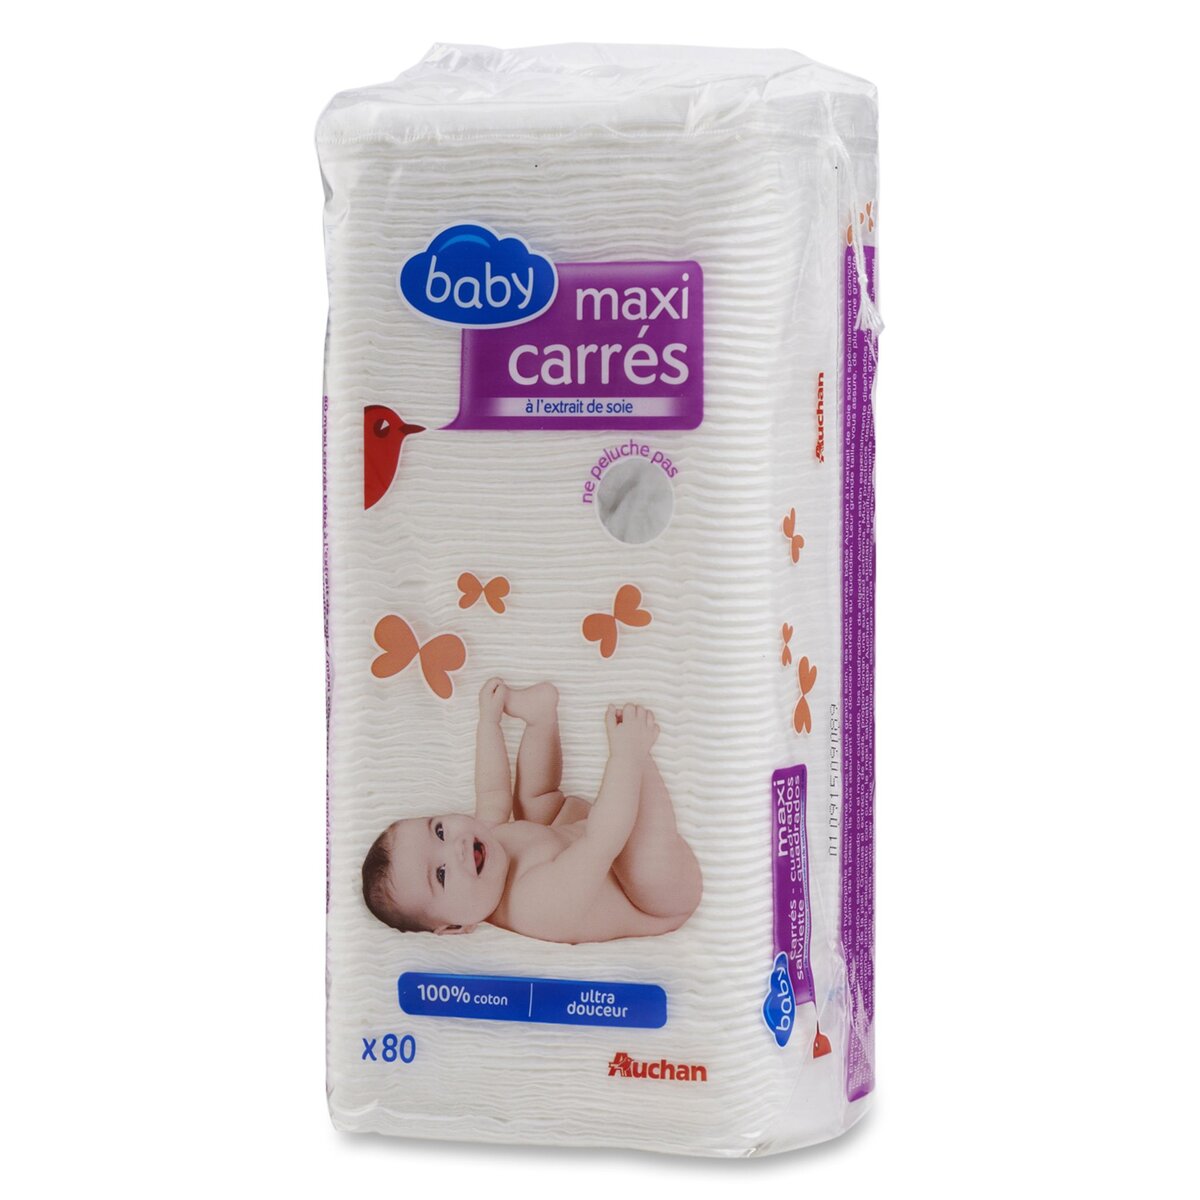 AUCHAN Auchan baby maxi carrés à l'extrait de soie ulta douceur x80